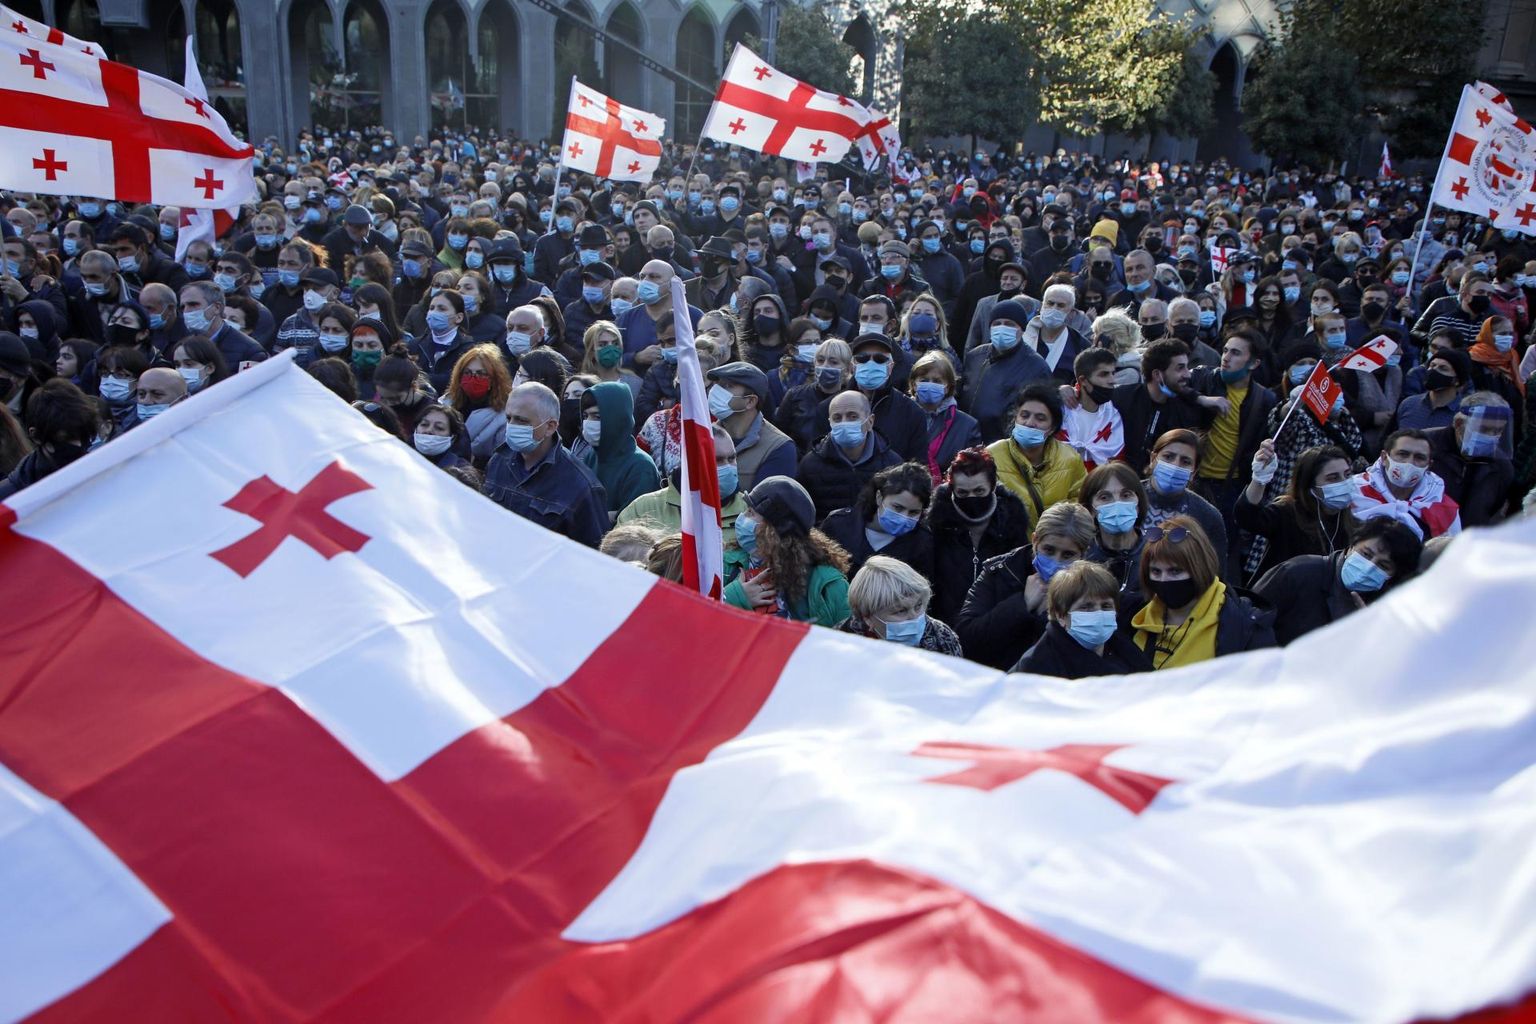 Pühapäeval kogunesid tänavatele kümned tuhanded inimesed, et seista Gruusia demokraatlike väärtuste eest.